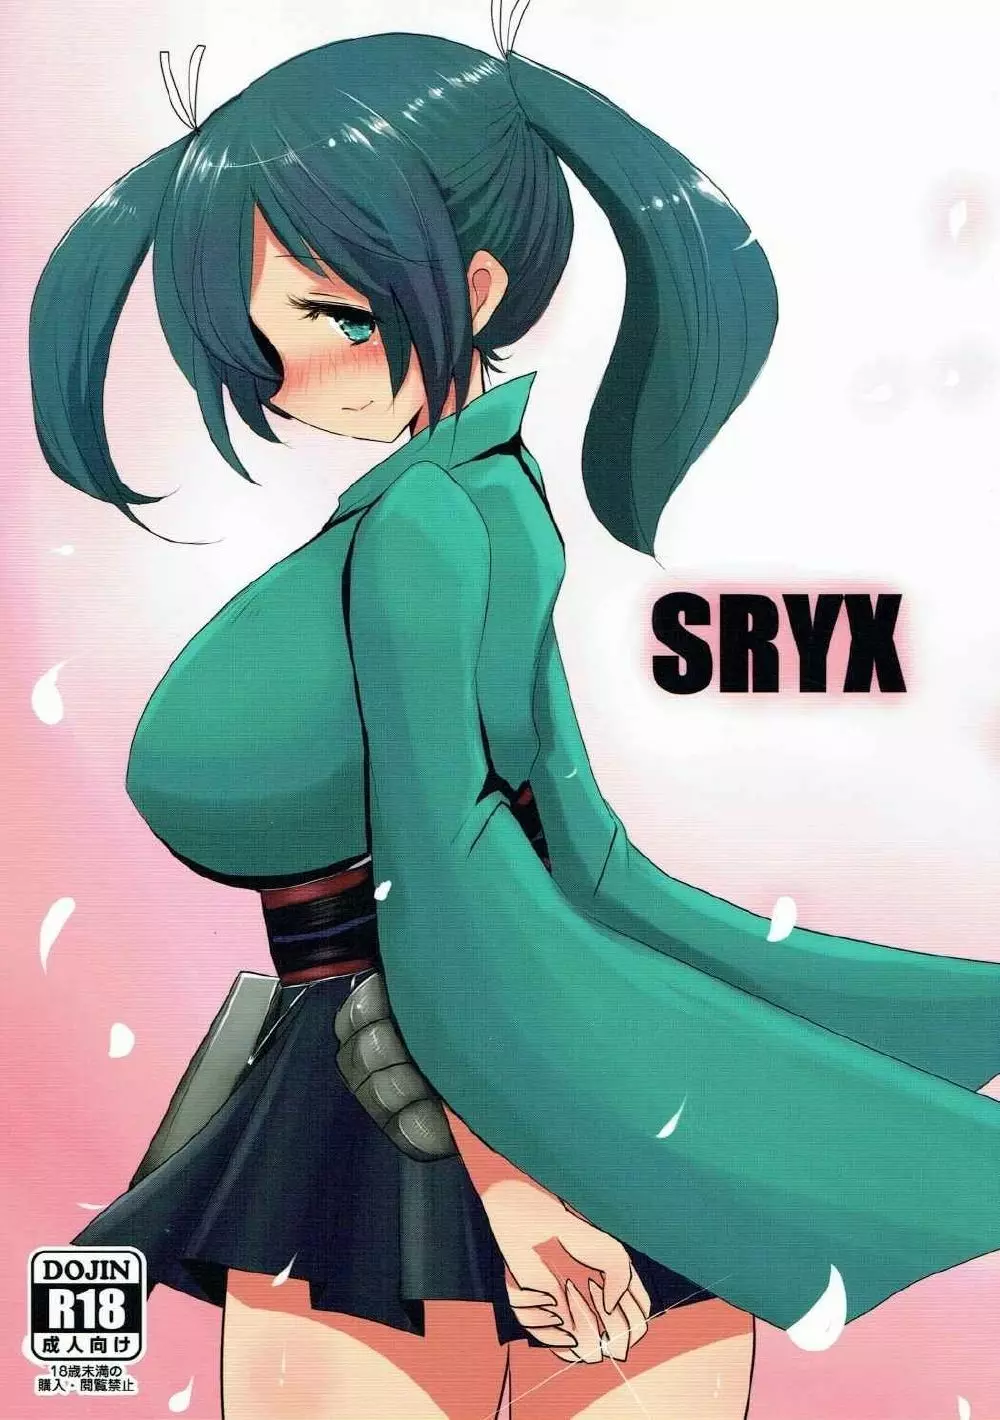 SRYX